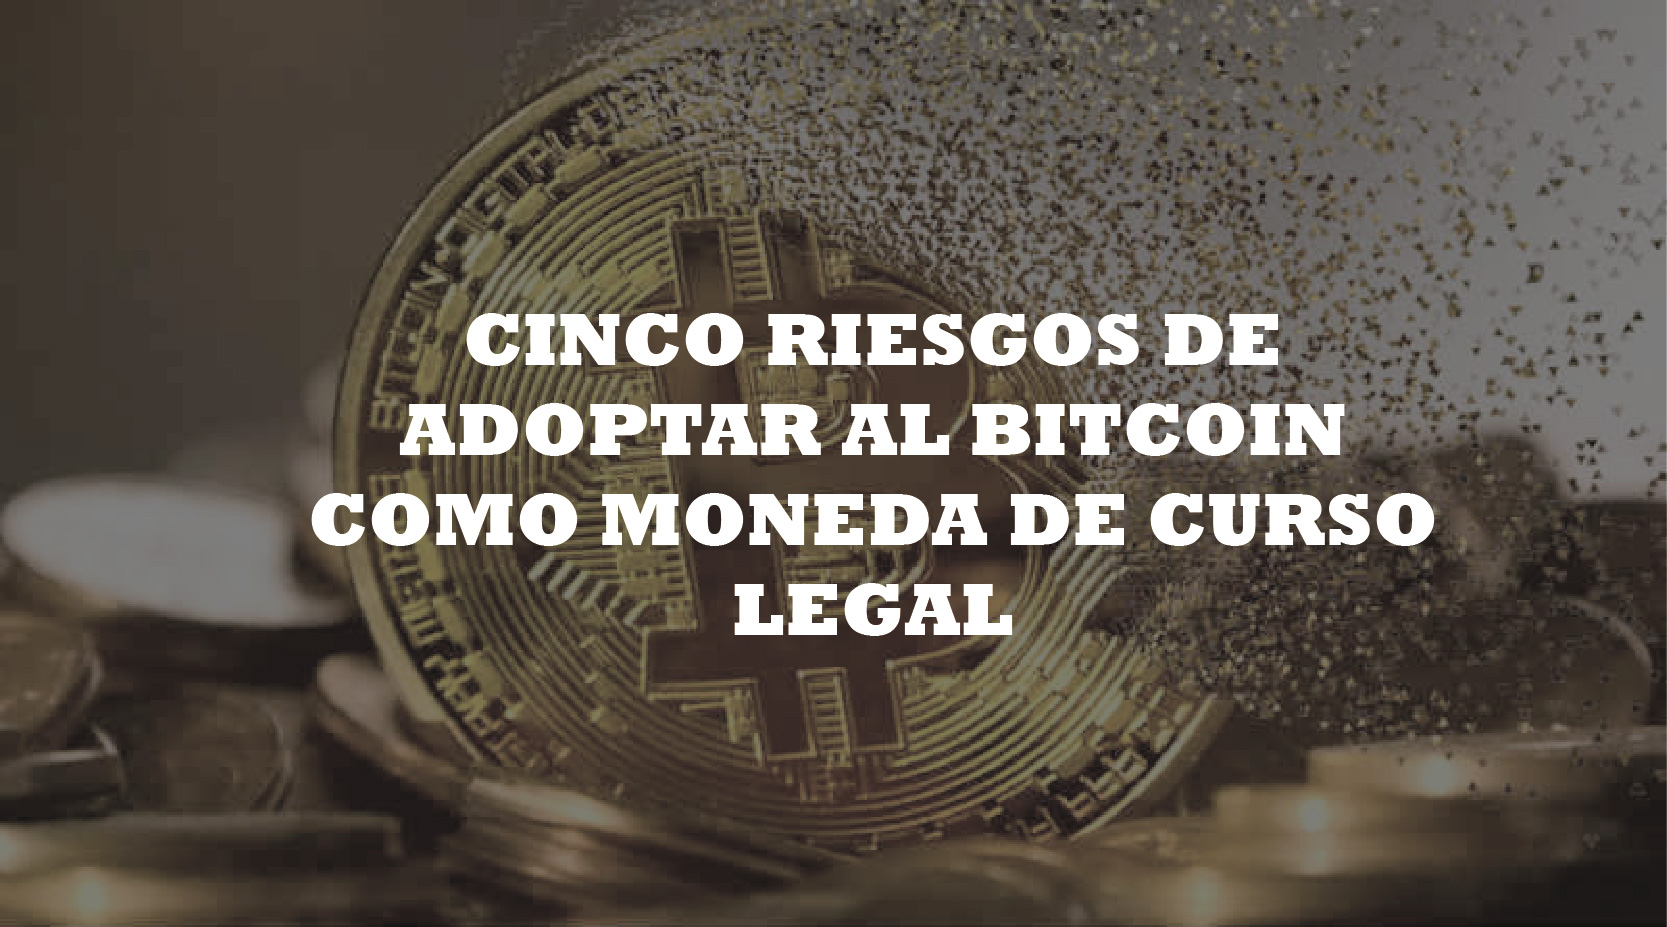 Los cinco riesgos de adoptar al Bitcoin como moneda de curso legal